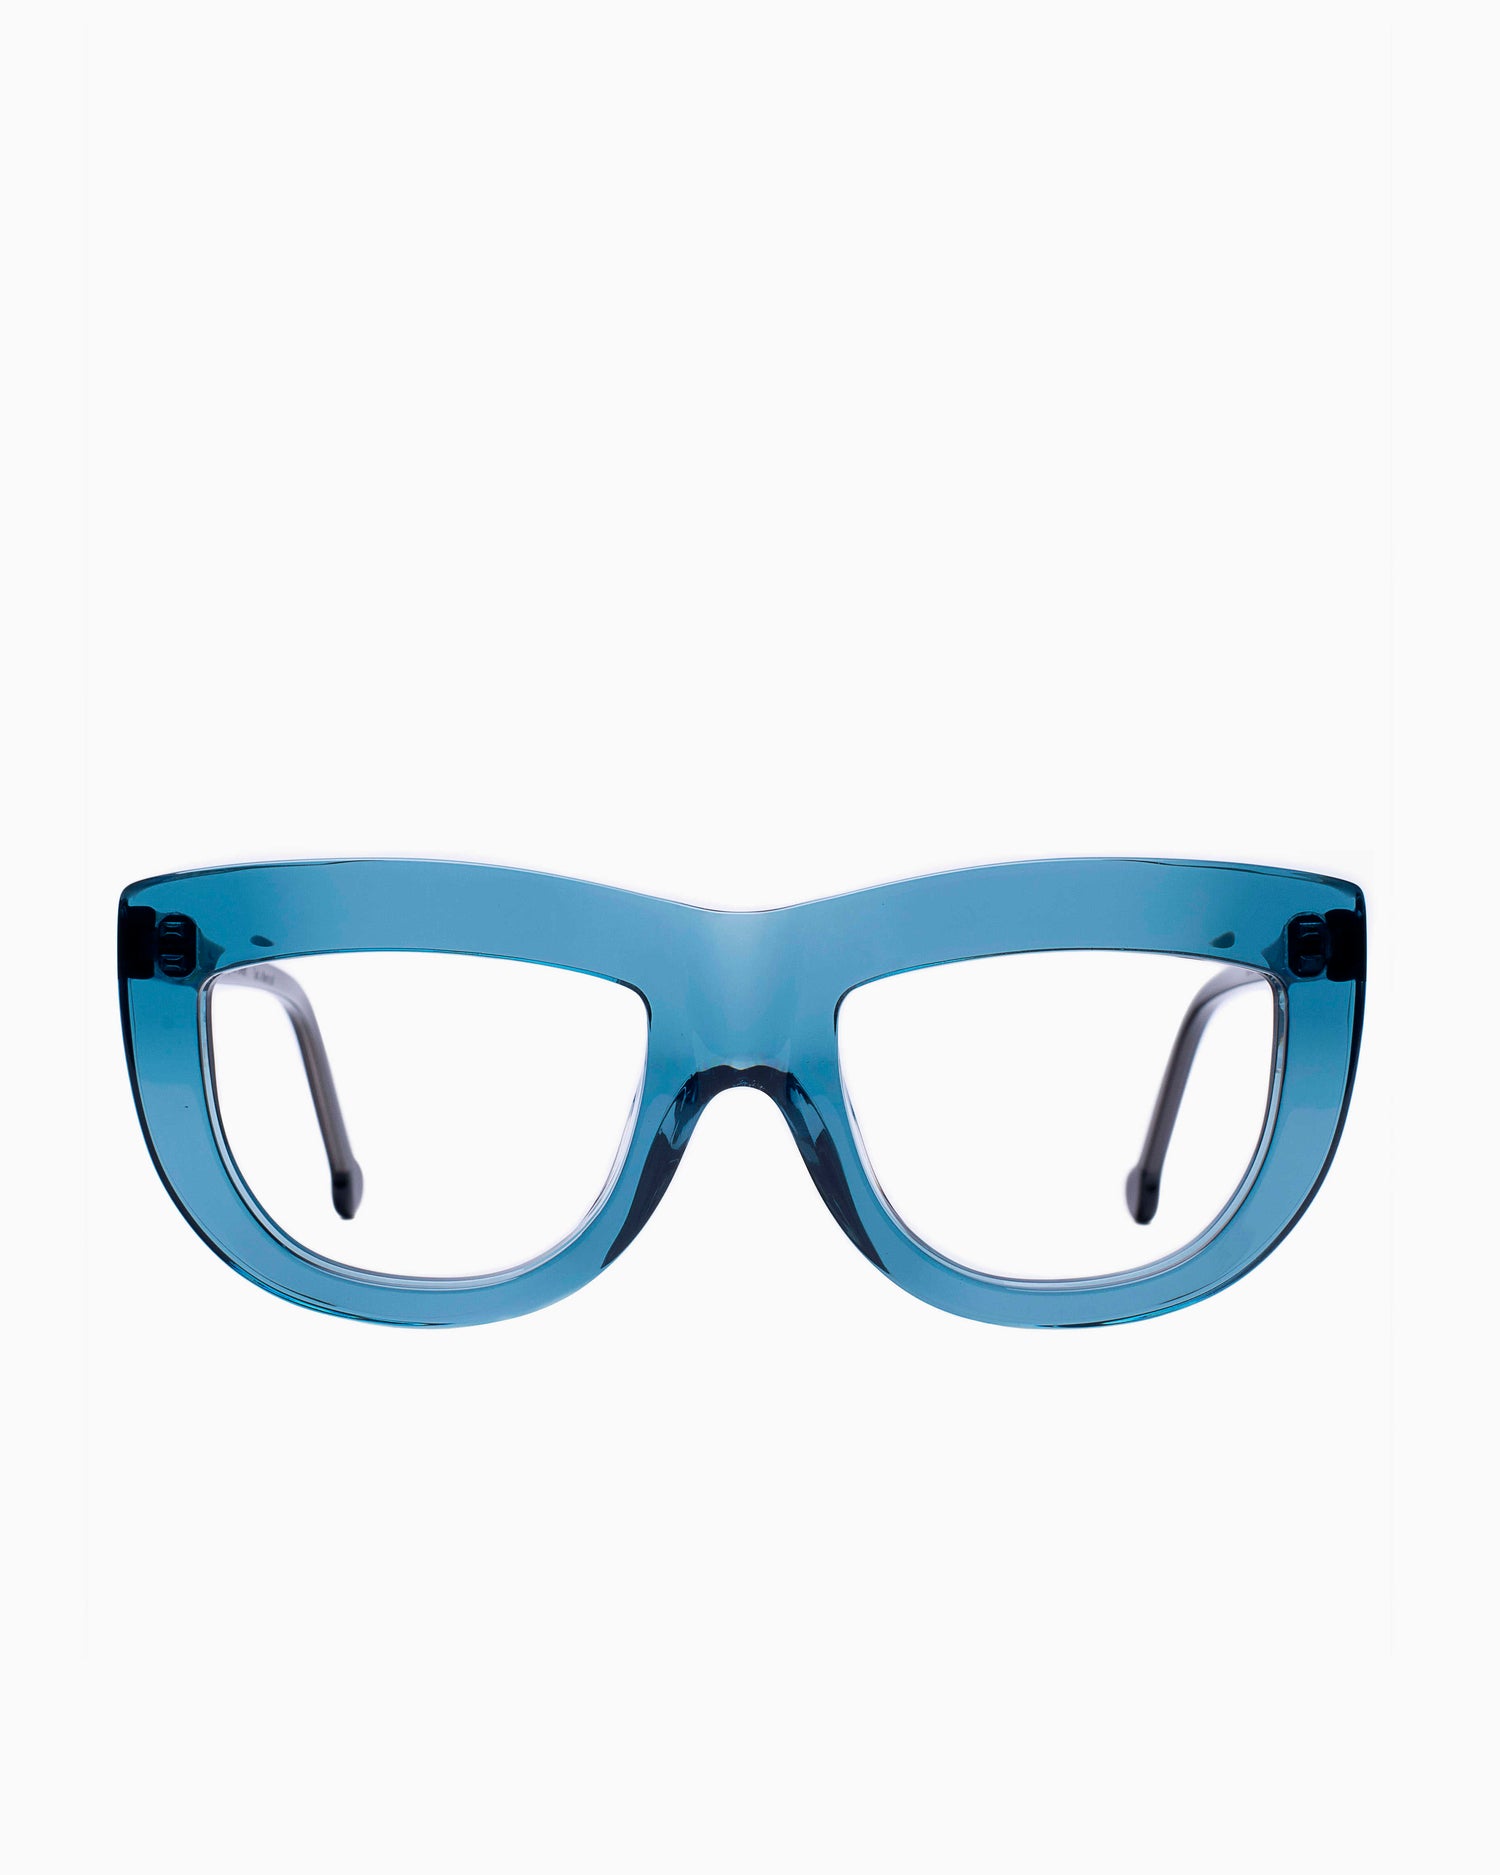 Marie-Sophie Dion - Germain - Blu | Bar à lunettes:  Marie-Sophie Dion